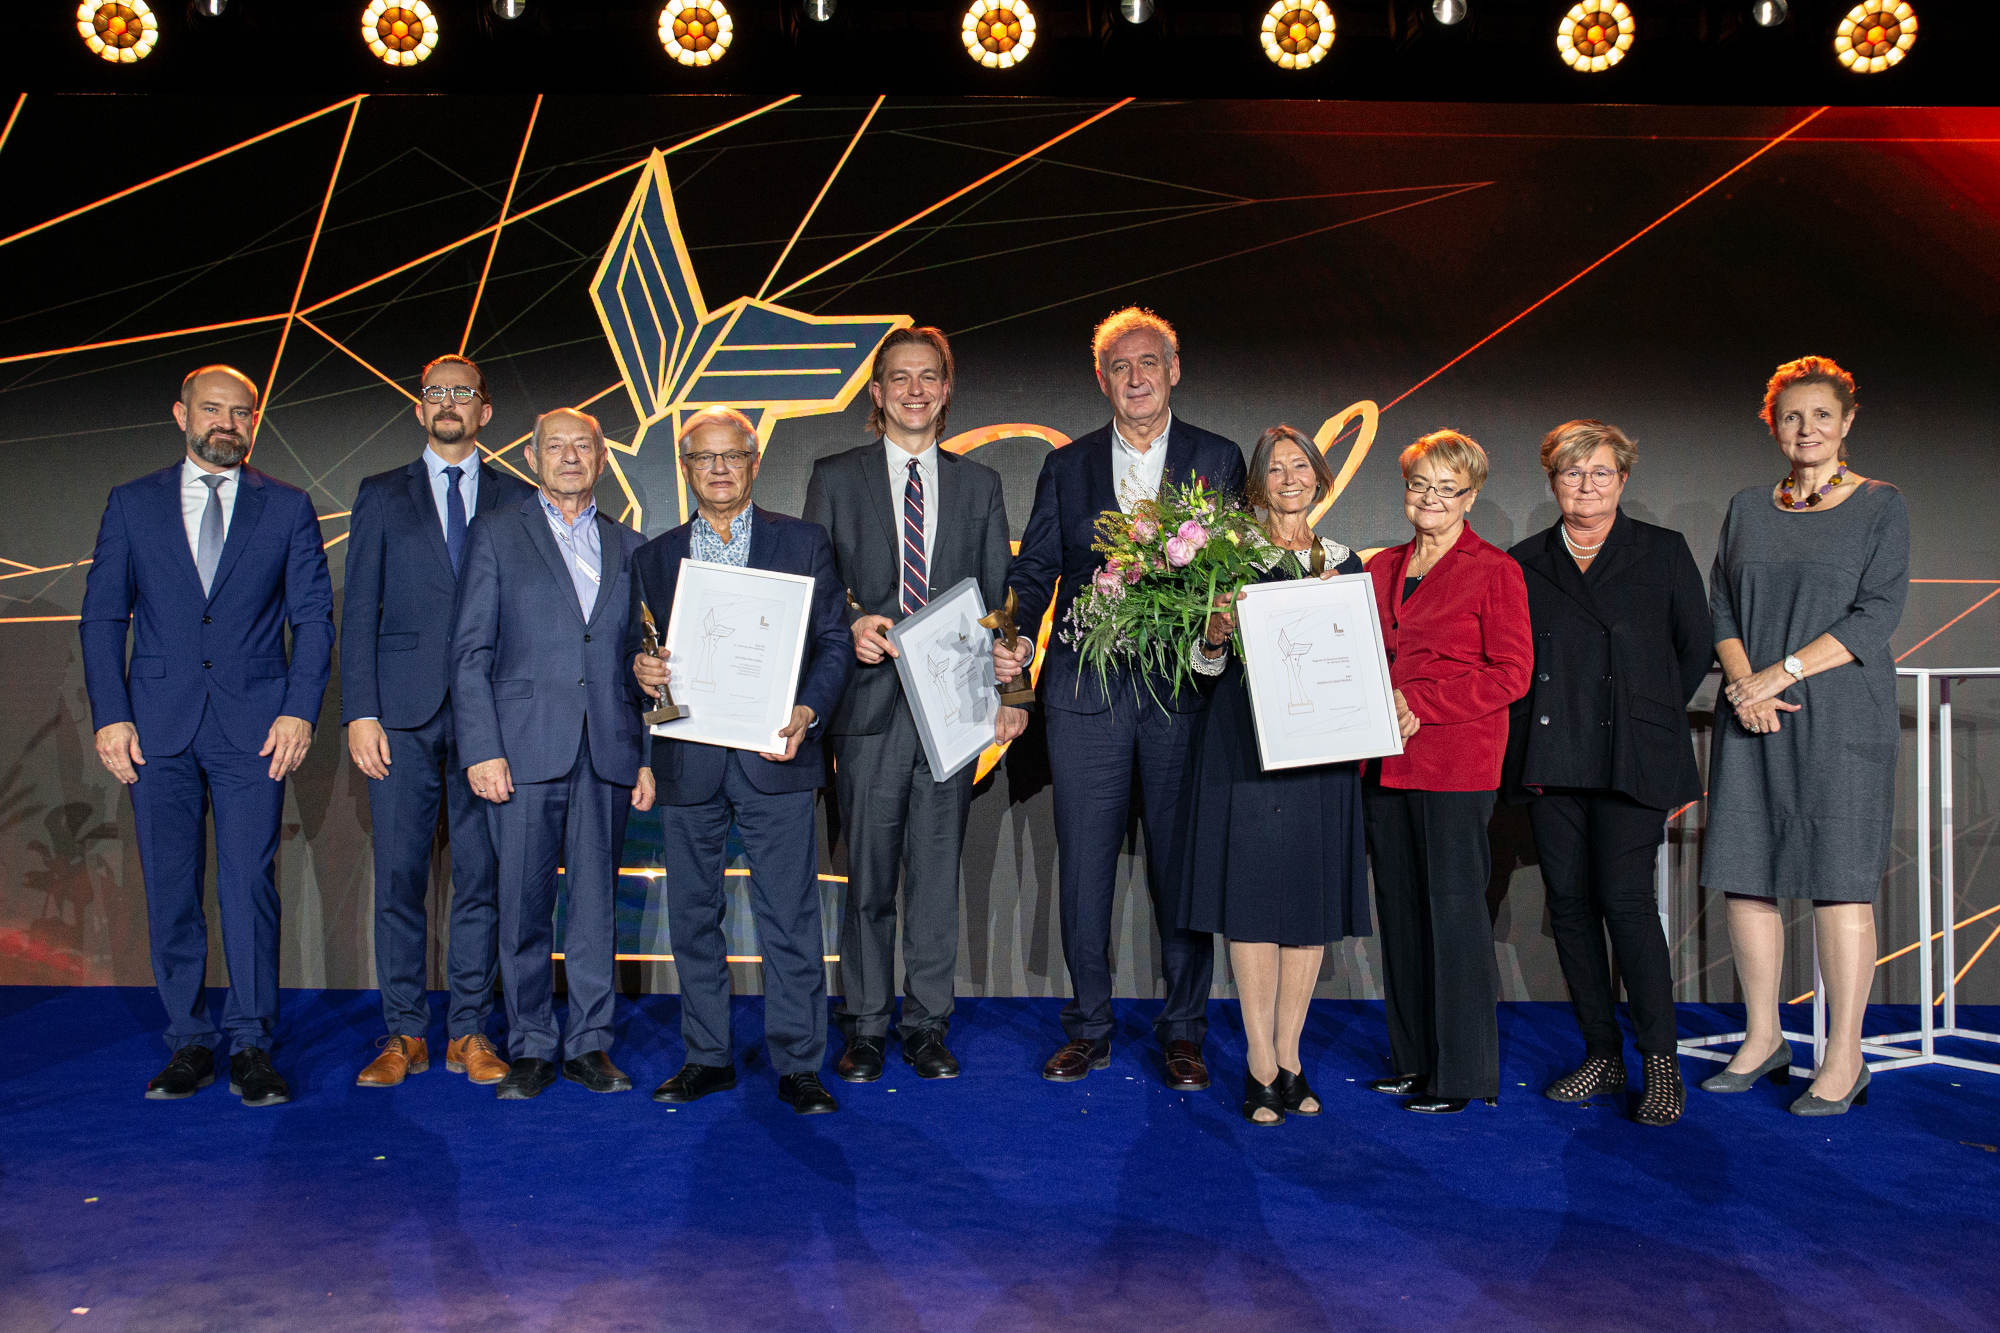 EFNI 2022: Nagrody Konfederacji Lewiatan dla Brzoski, Wolfsona, Dąbrowskiego, Tejchmana i Woydyłło-Osiatyńskiej